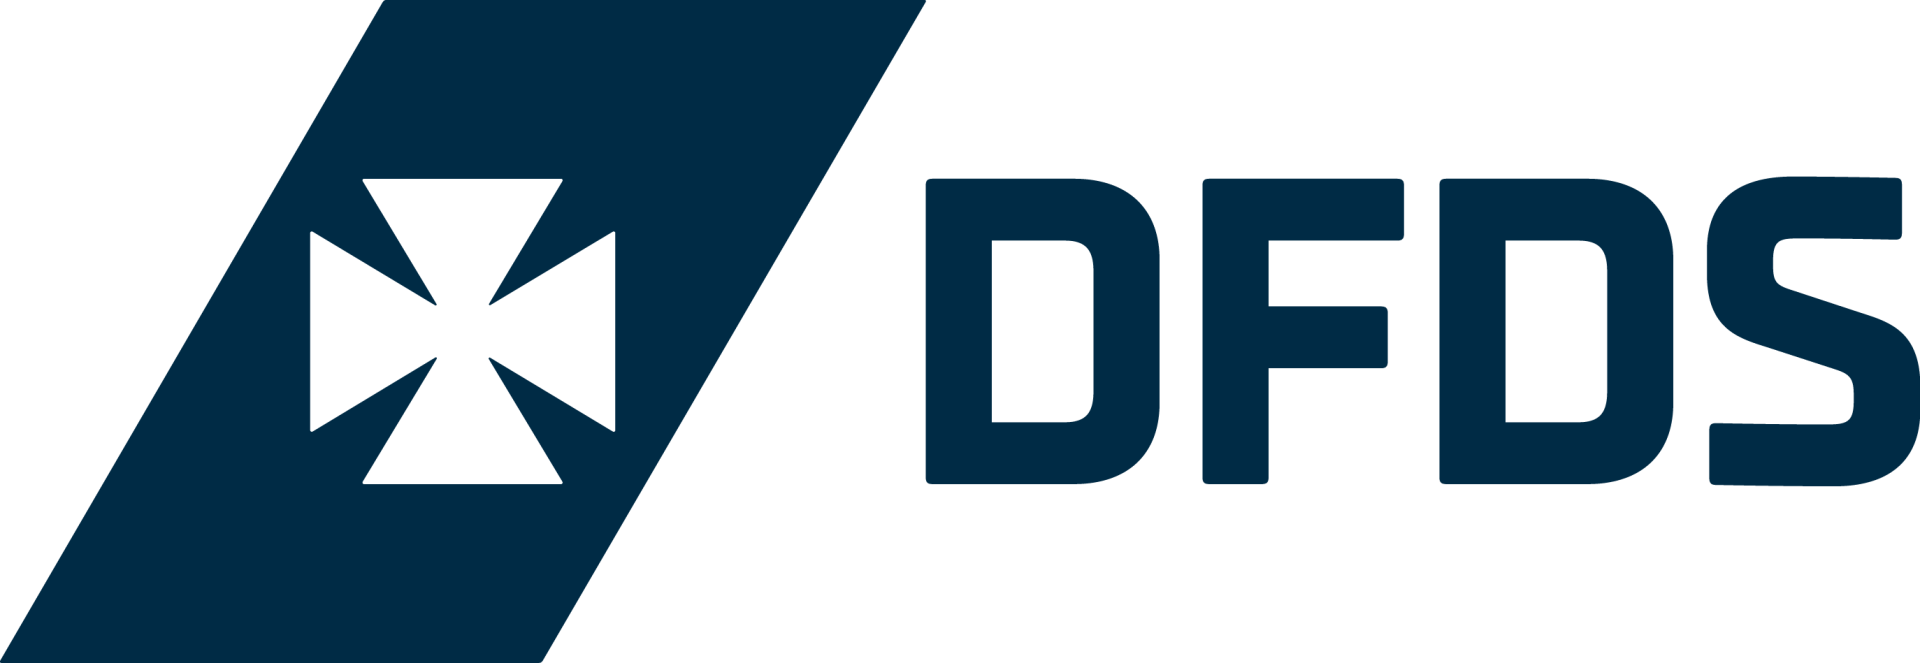 DFDS_Logo_Positiv_2016_RGB